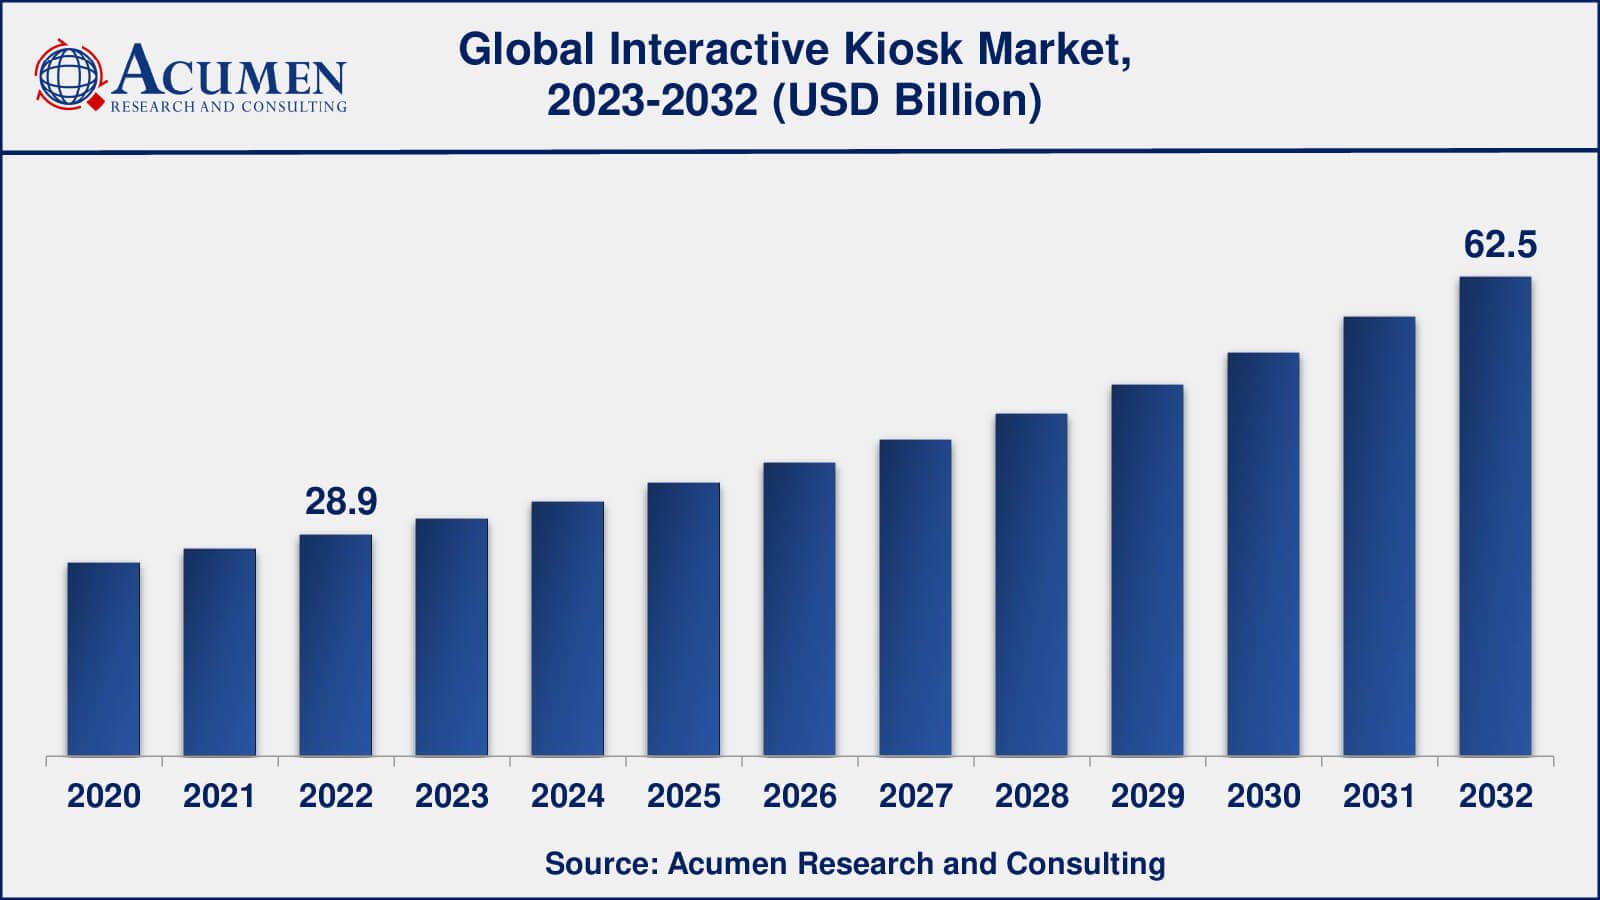 Global Interactive Kiosk Market Dynamics